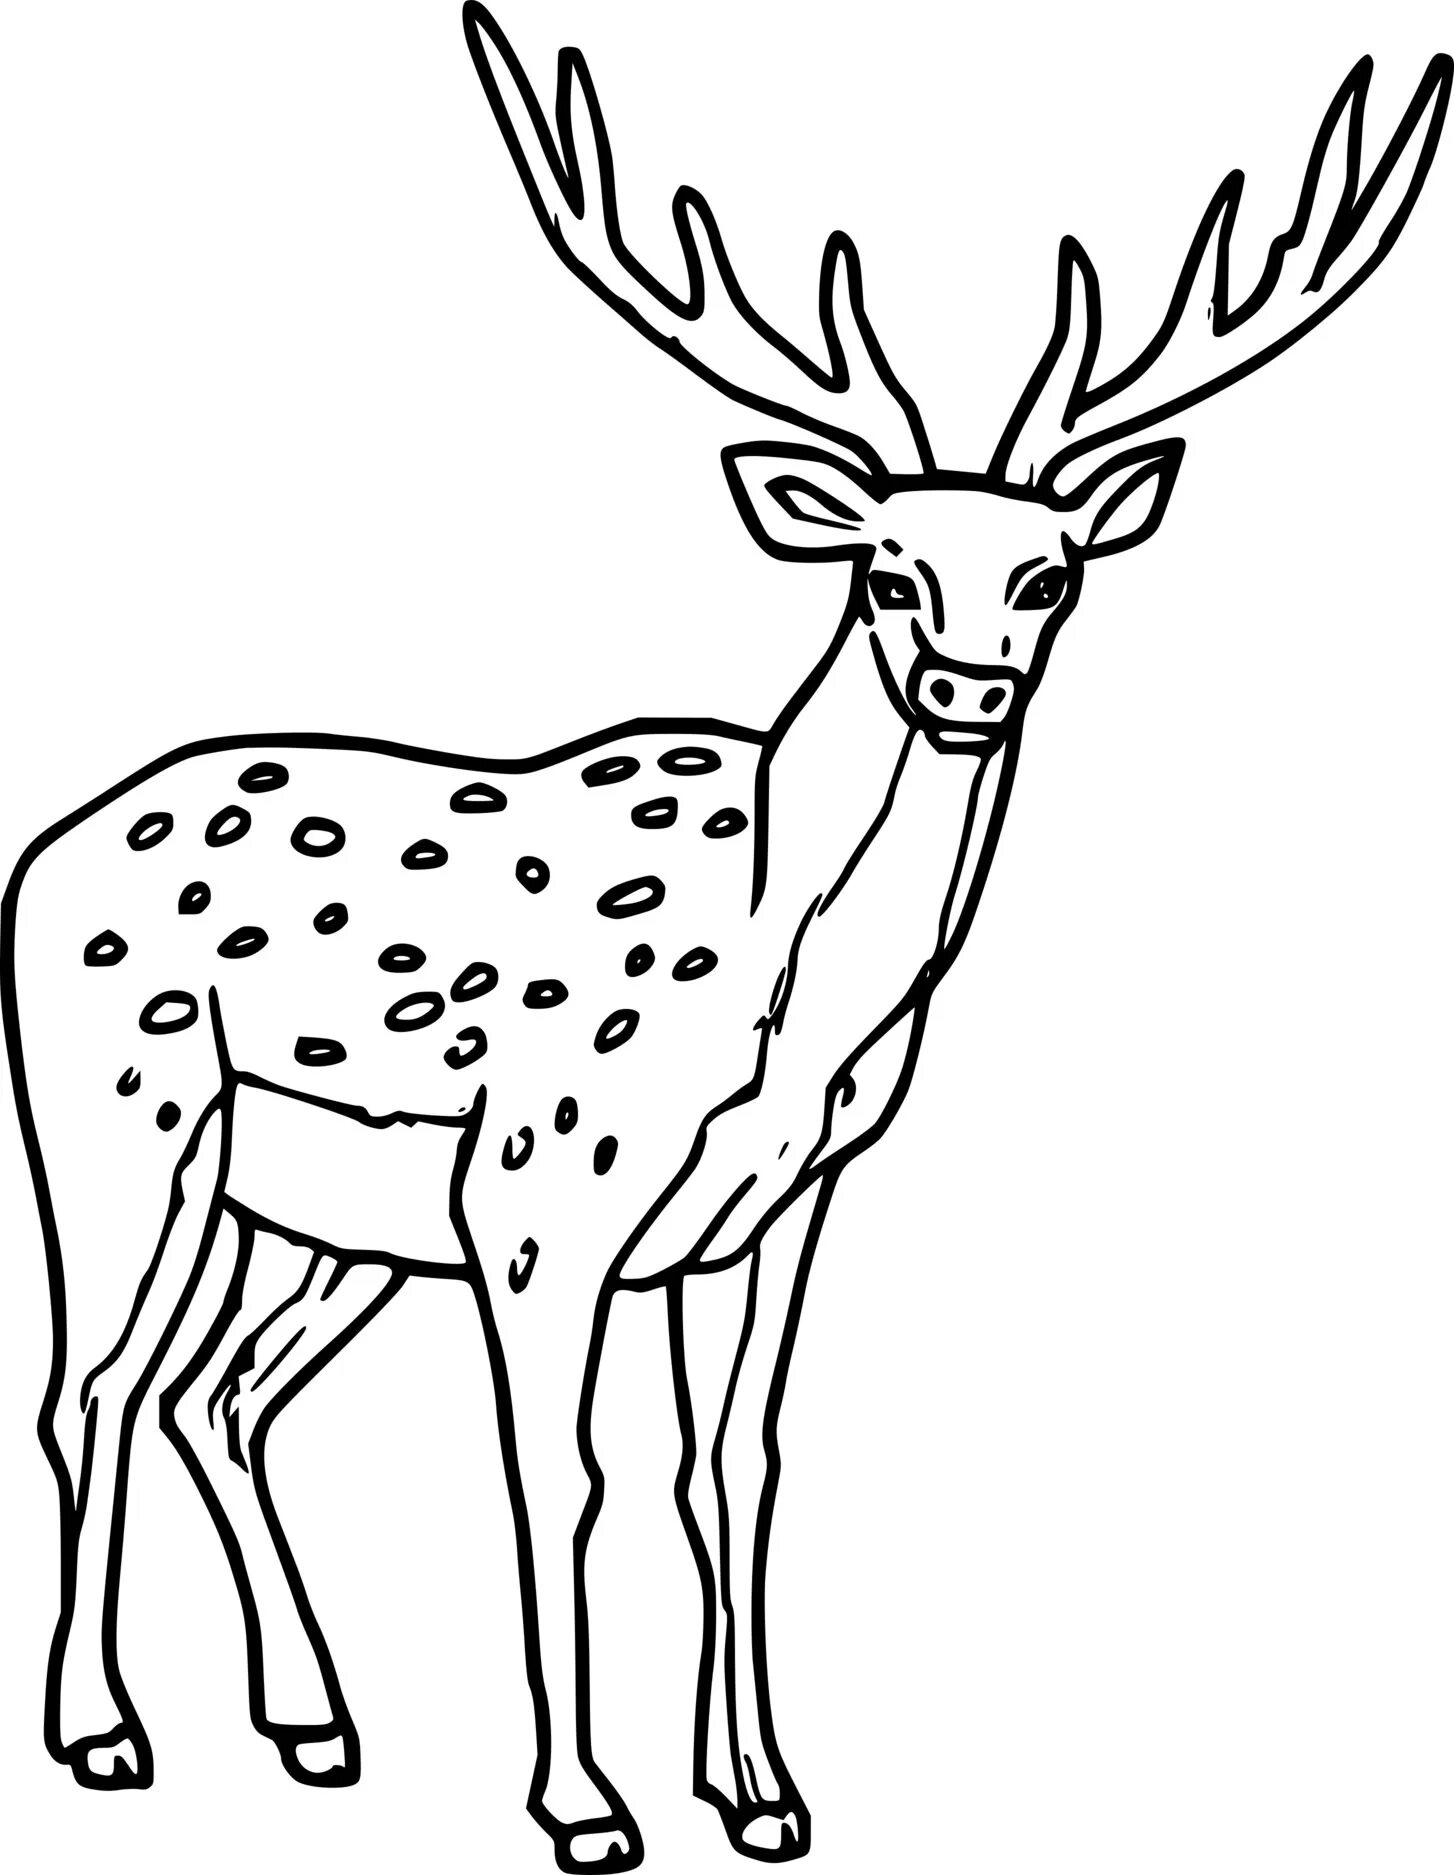 олень пятнистый deer